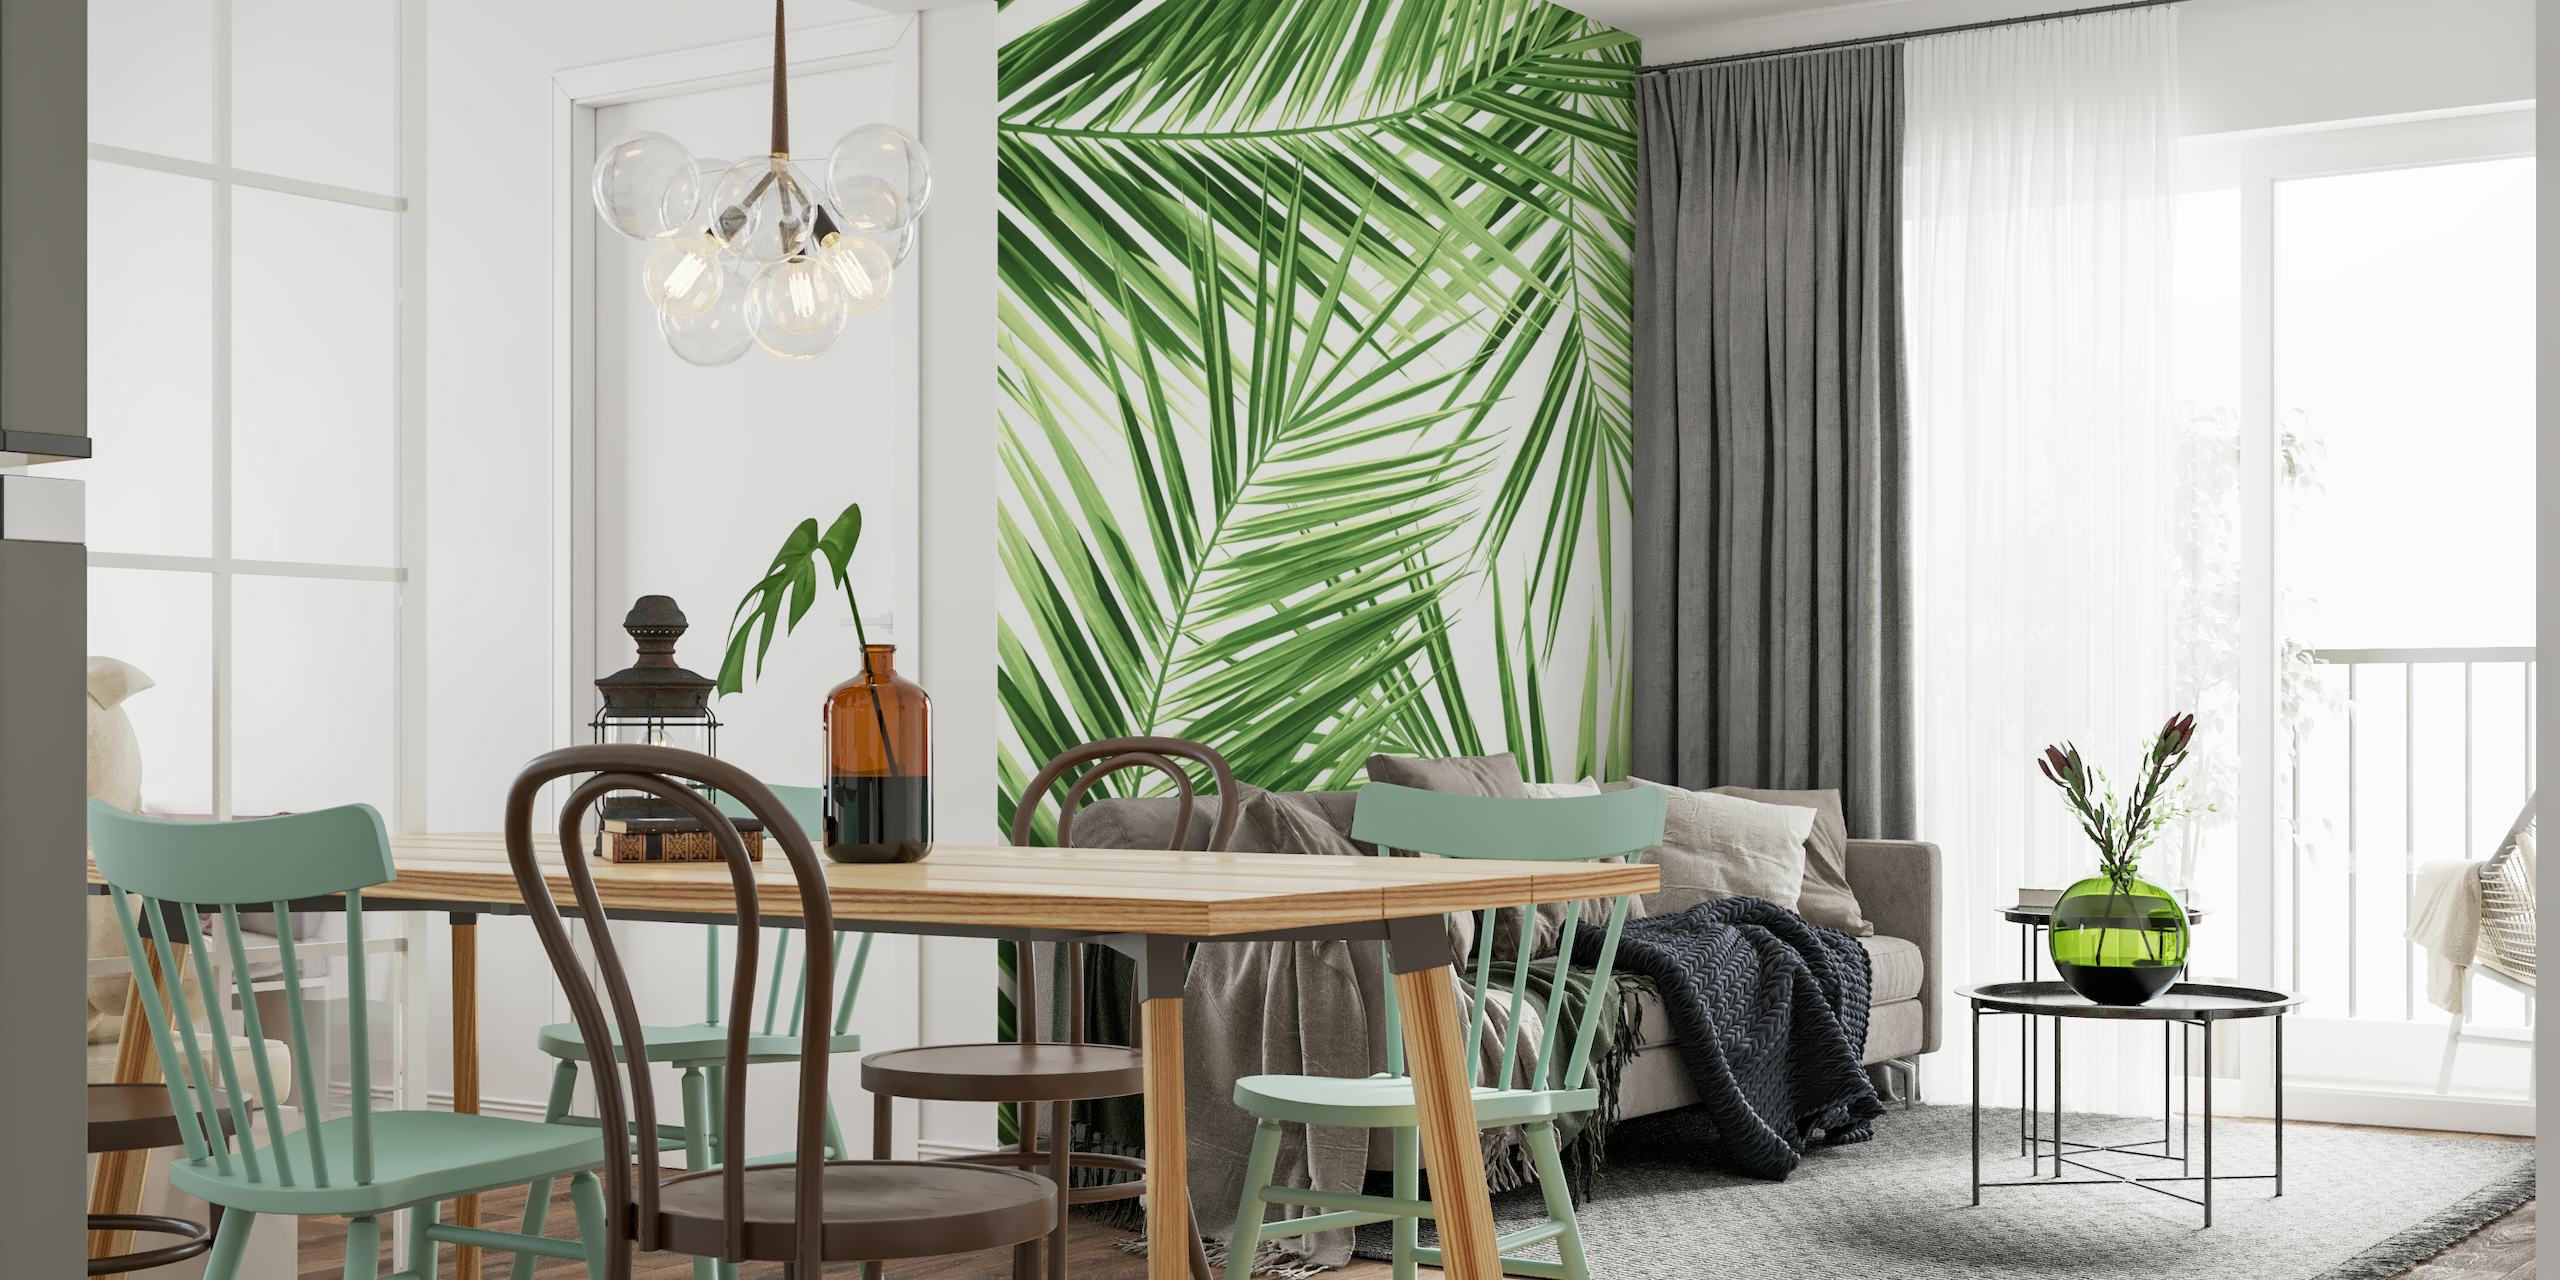 Fototapeta se vzorem zeleného palmového listu pro dekoraci v tropickém stylu